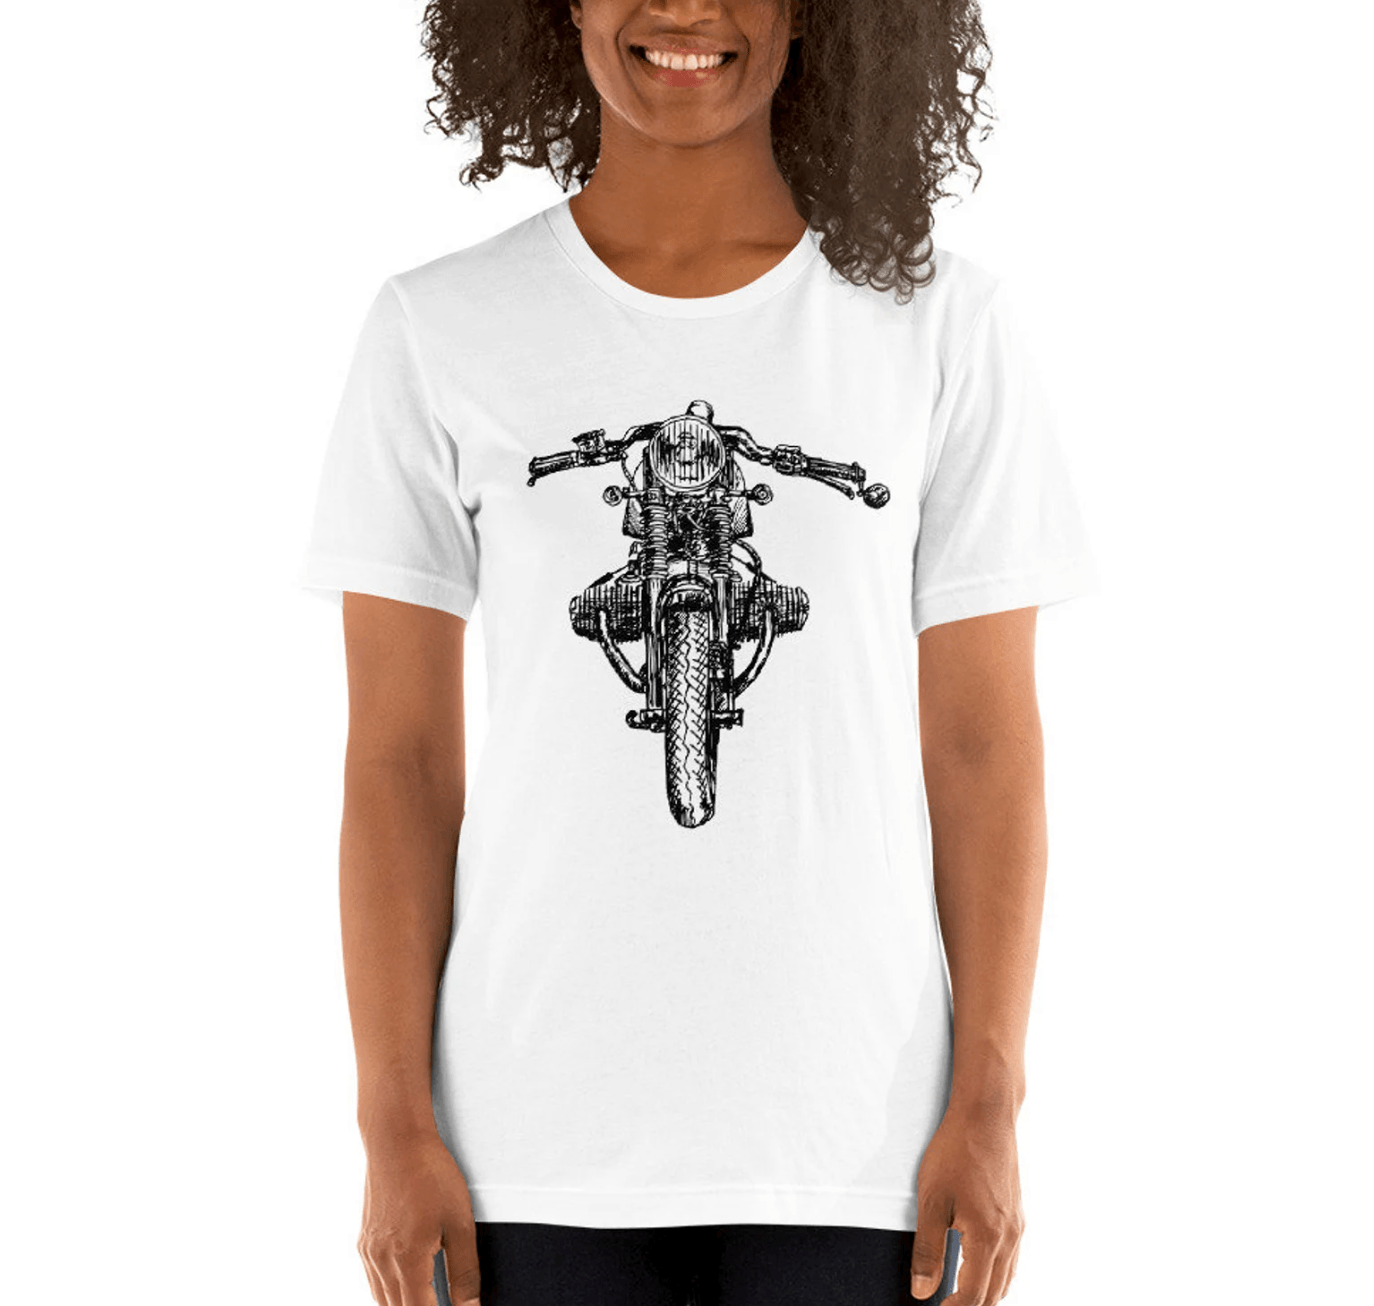 BellavanceInk: Cafe Racer Motorcycle Pen And Ink Drawing Short Sleeve T-Shirt - BellavanceInk